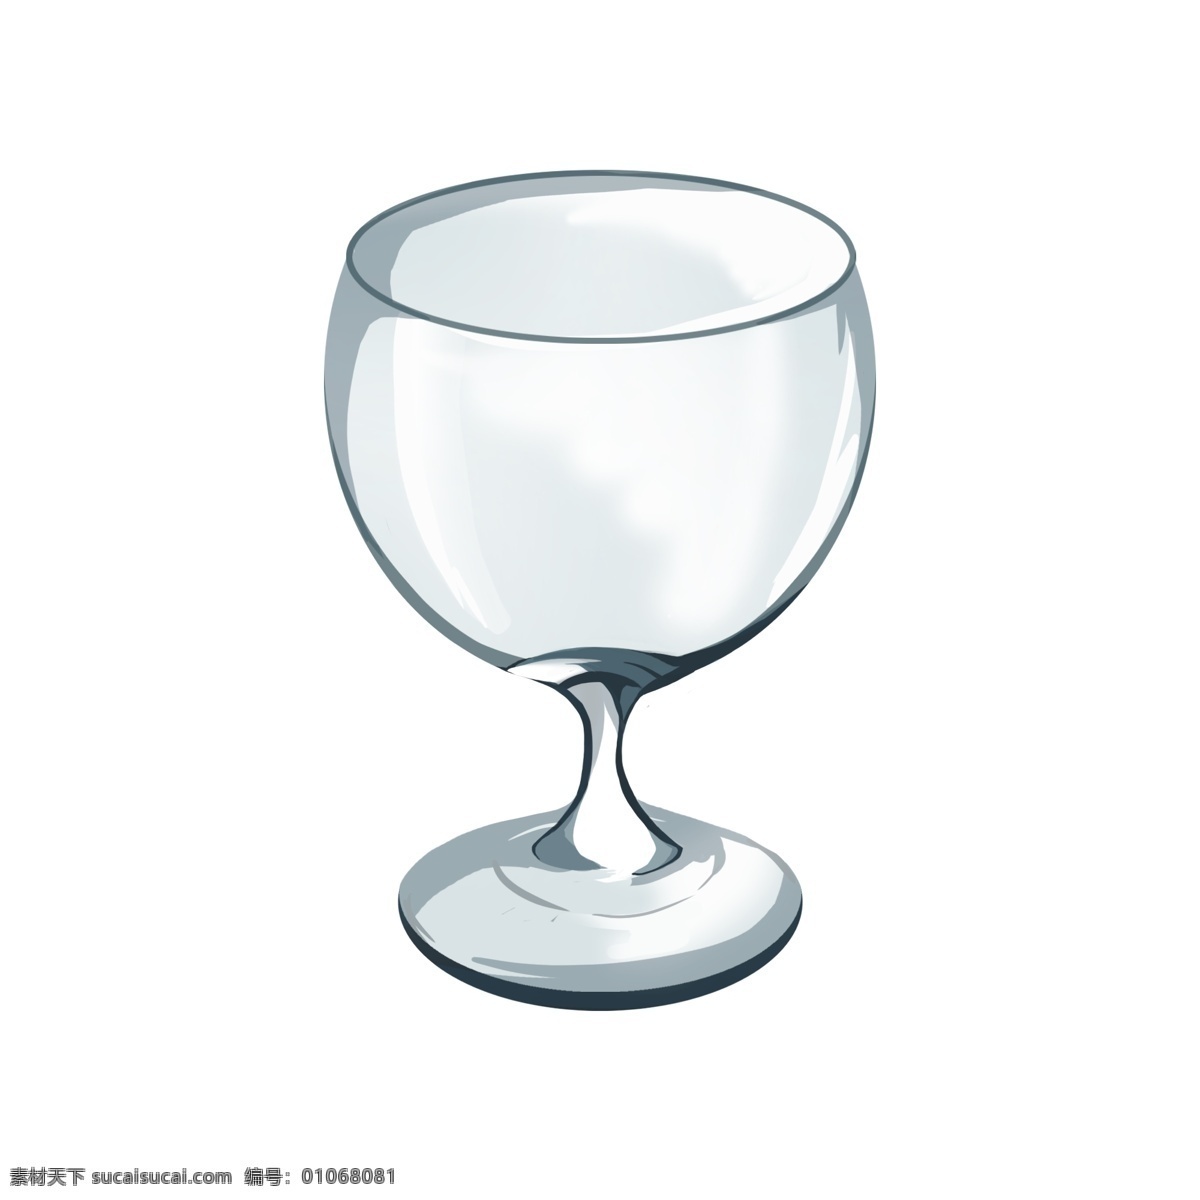 白色 红酒 高脚杯 插图 漂亮的高脚杯 圆形的高脚杯 立体高脚杯 时尚的高脚杯 酒杯高脚杯 白色高脚杯